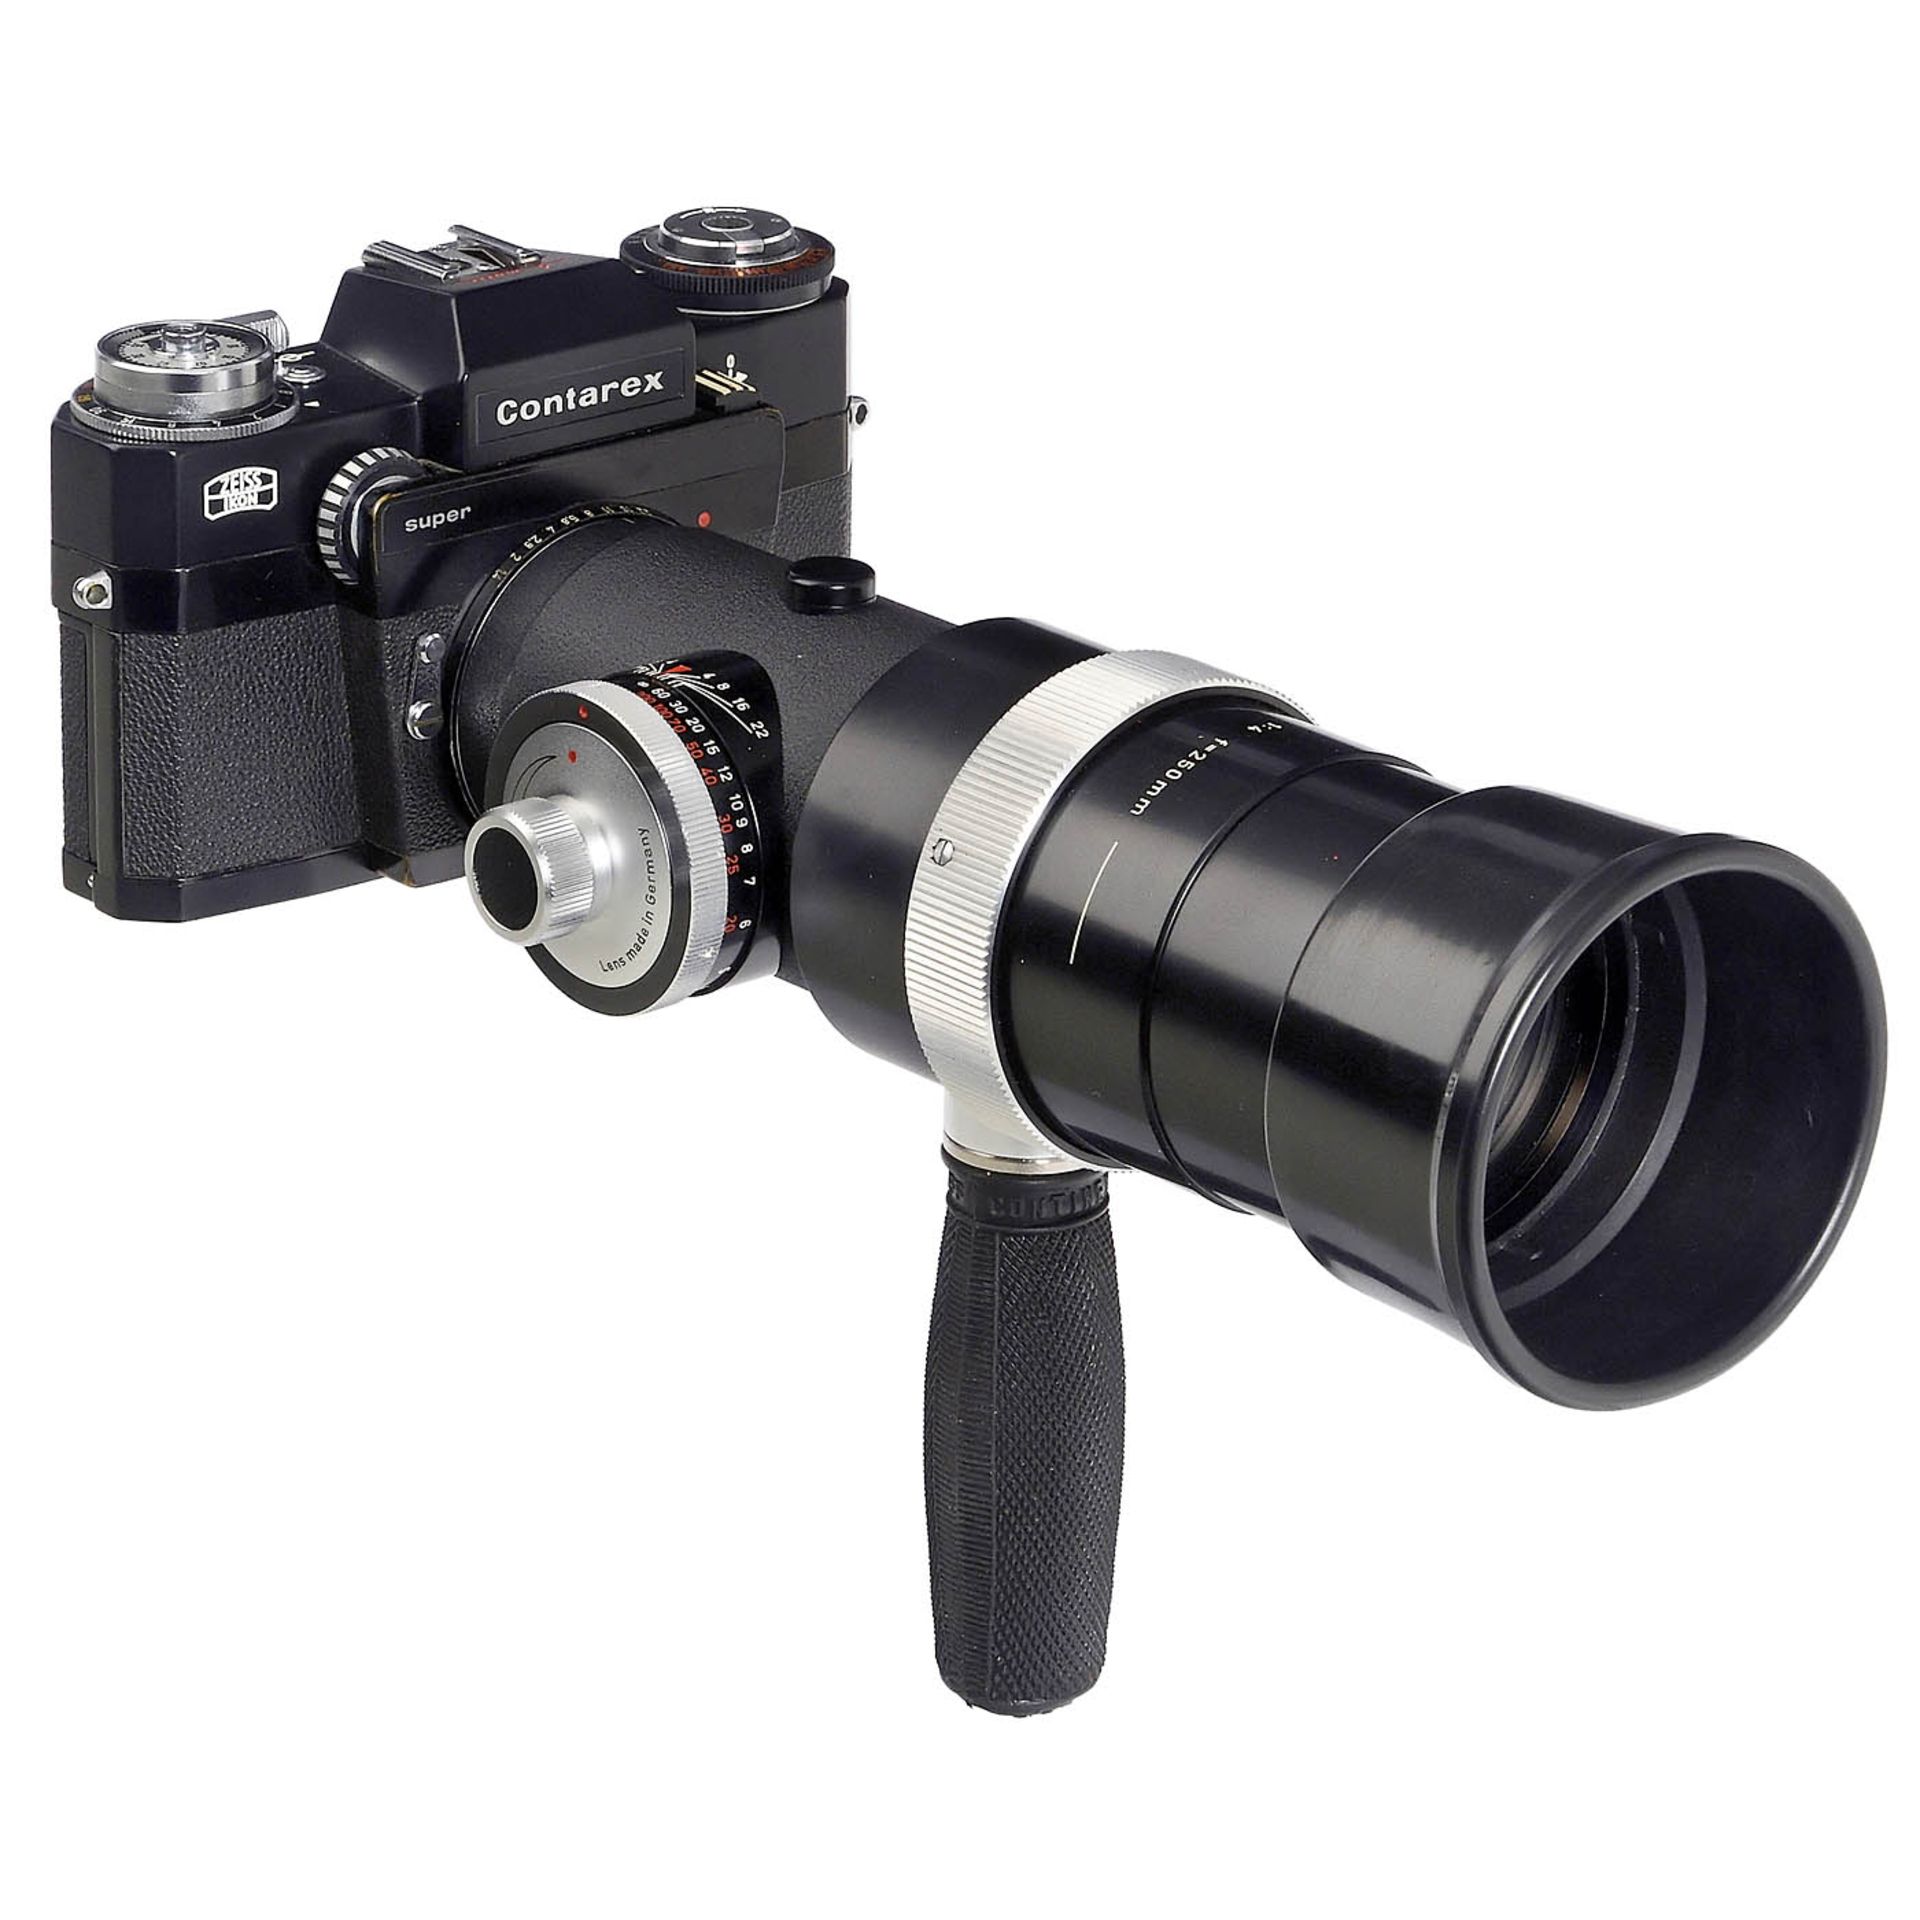 Contarex super (Black) Camera and Sonnar 4/250 mm Lens